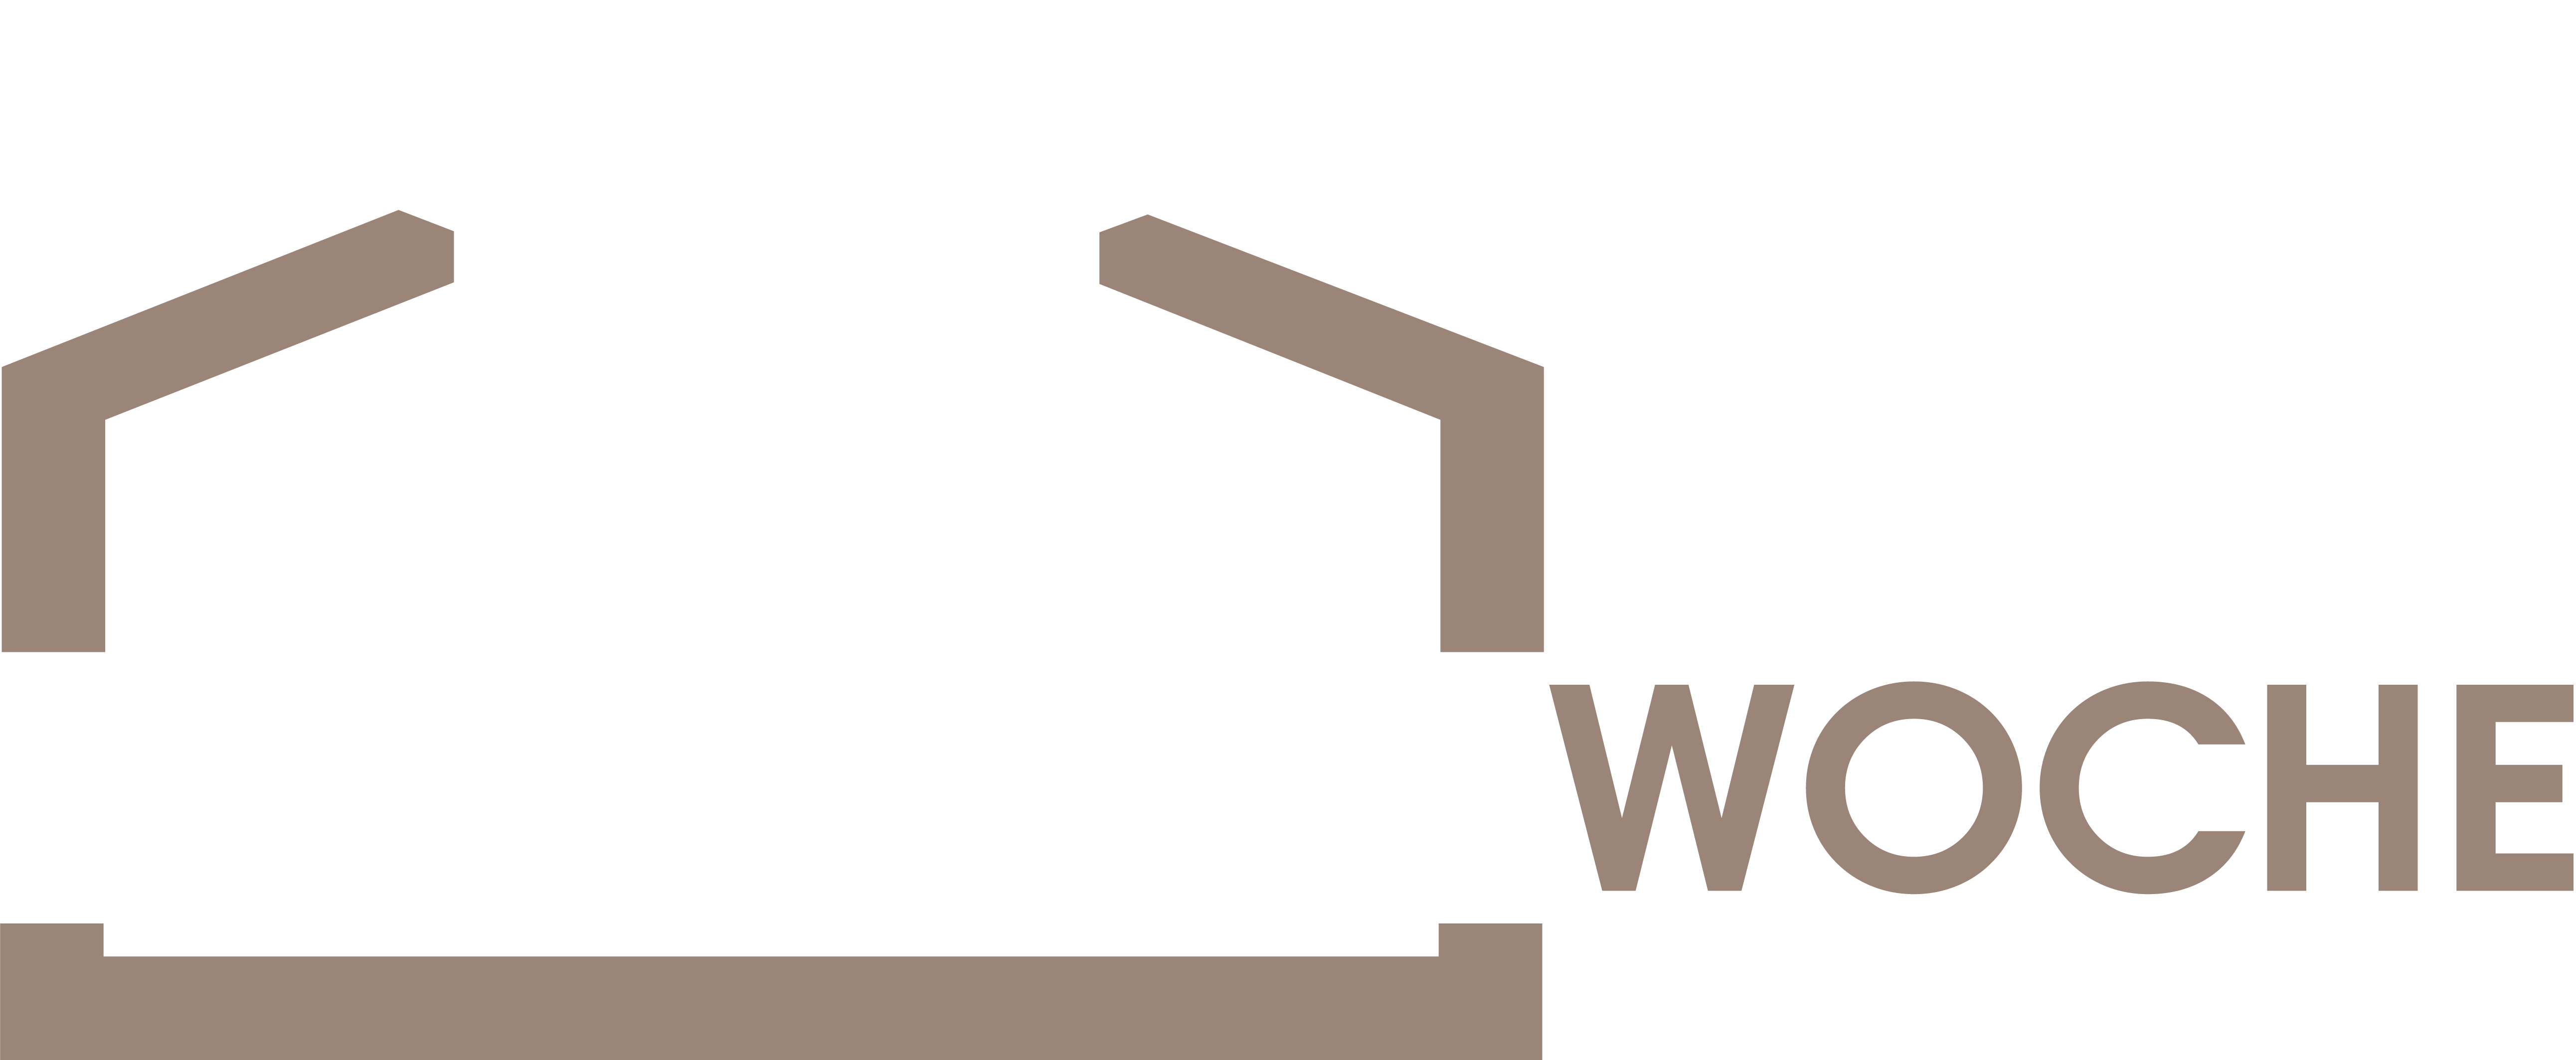 Logo-Kompetenzwoche-Haustechnik